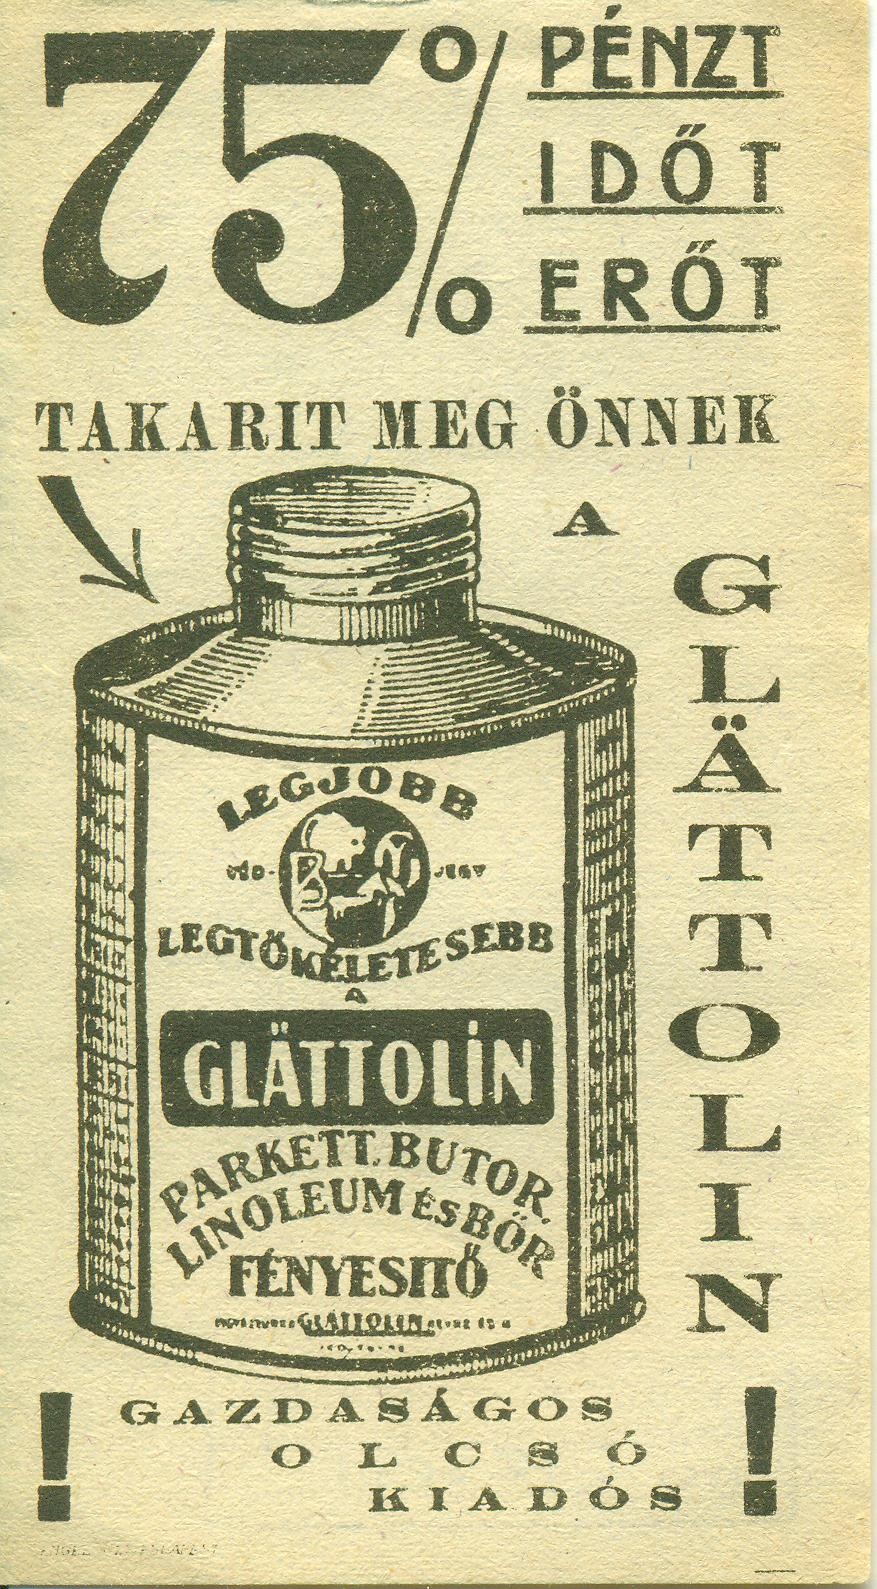 Glättolin parkett, bútor, linóleum és bőr fényesítő (Magyar Kereskedelmi és Vendéglátóipari Múzeum CC BY-NC-SA)